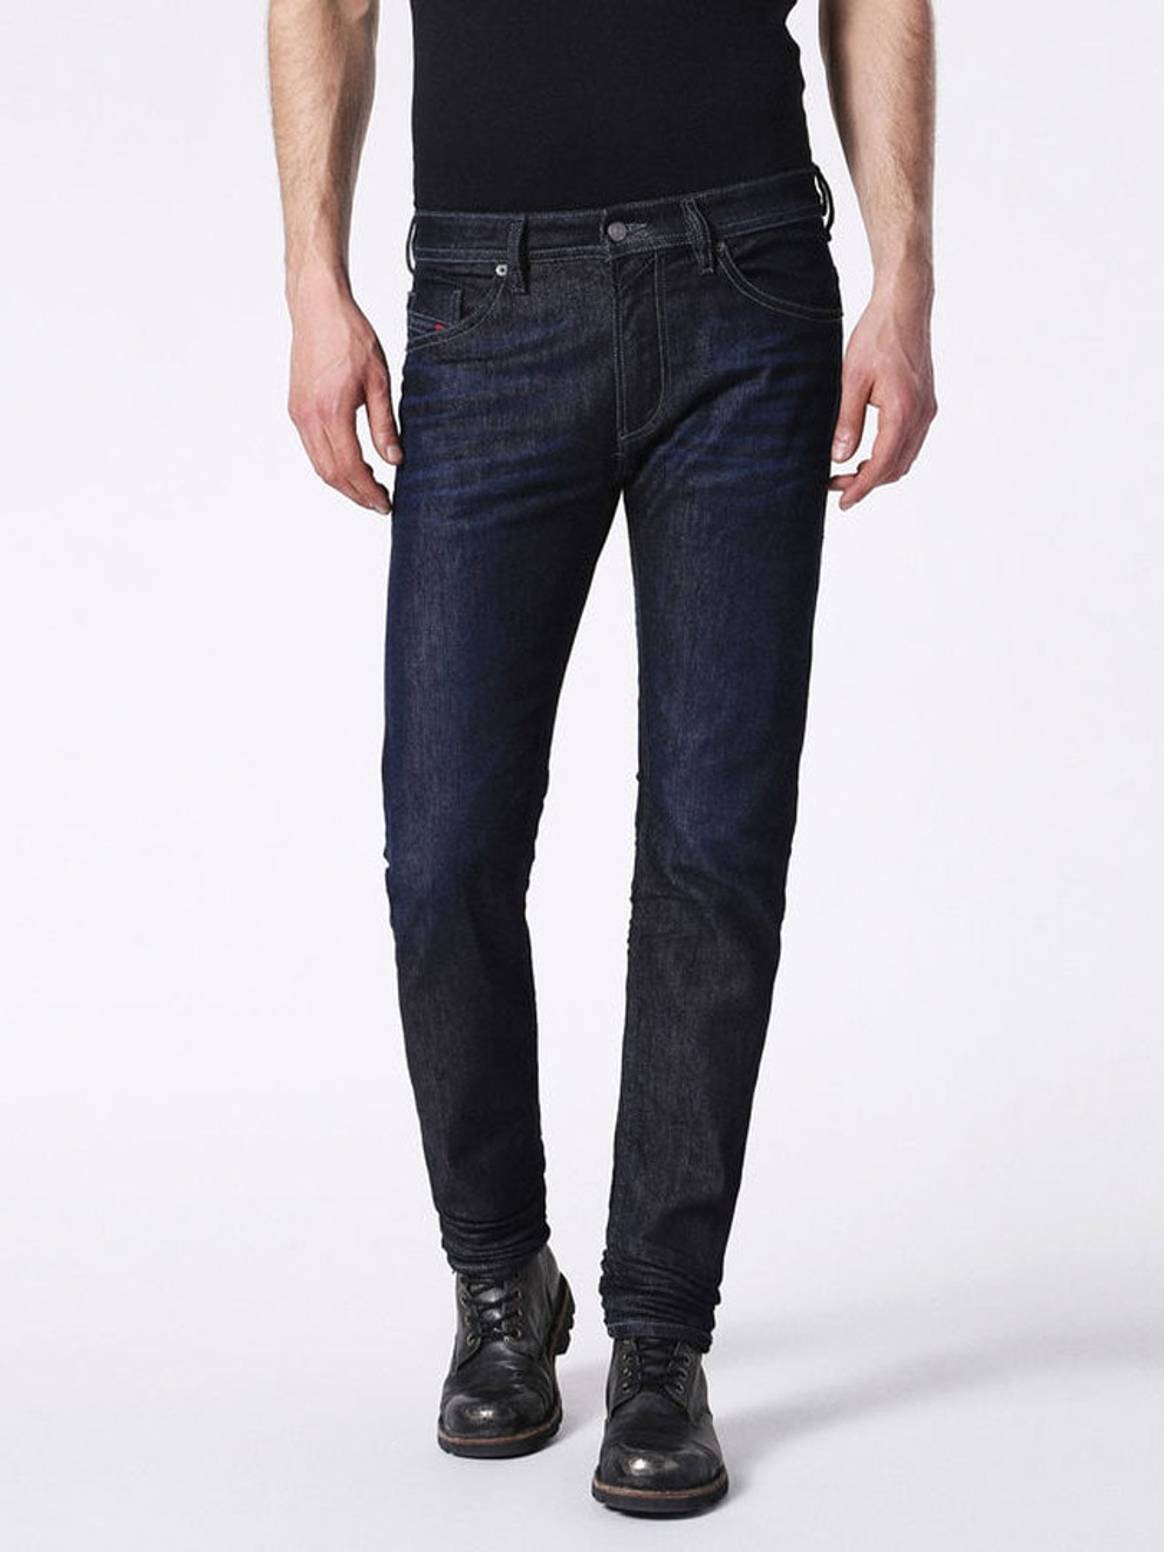 Los jeans más vendidos de las 9 mejores marcas de denim